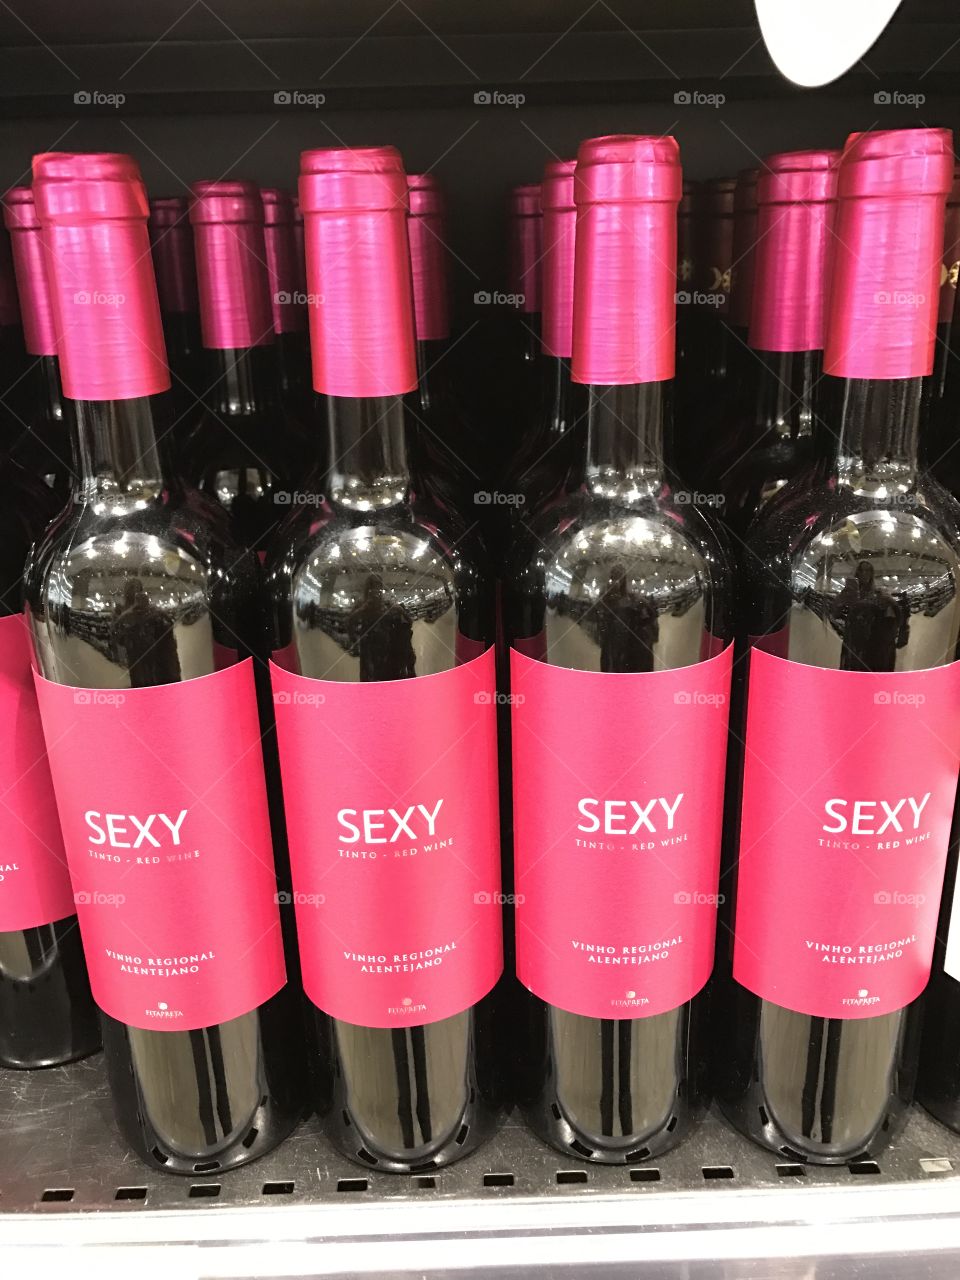 Sexy local brand of Portuguese red vine